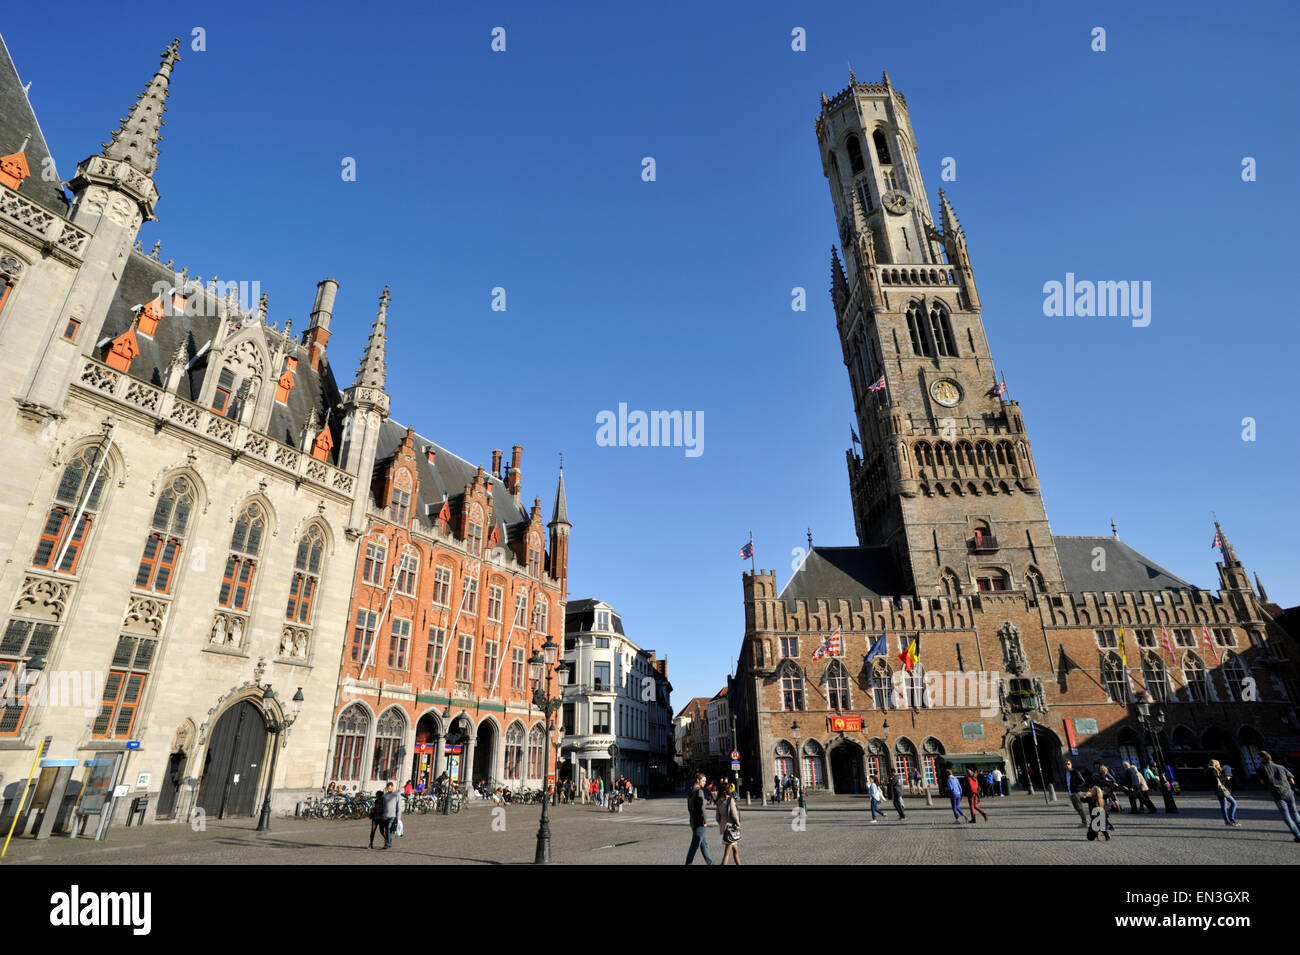 Belgium, Bruges, the Markt, market square Stock Photo